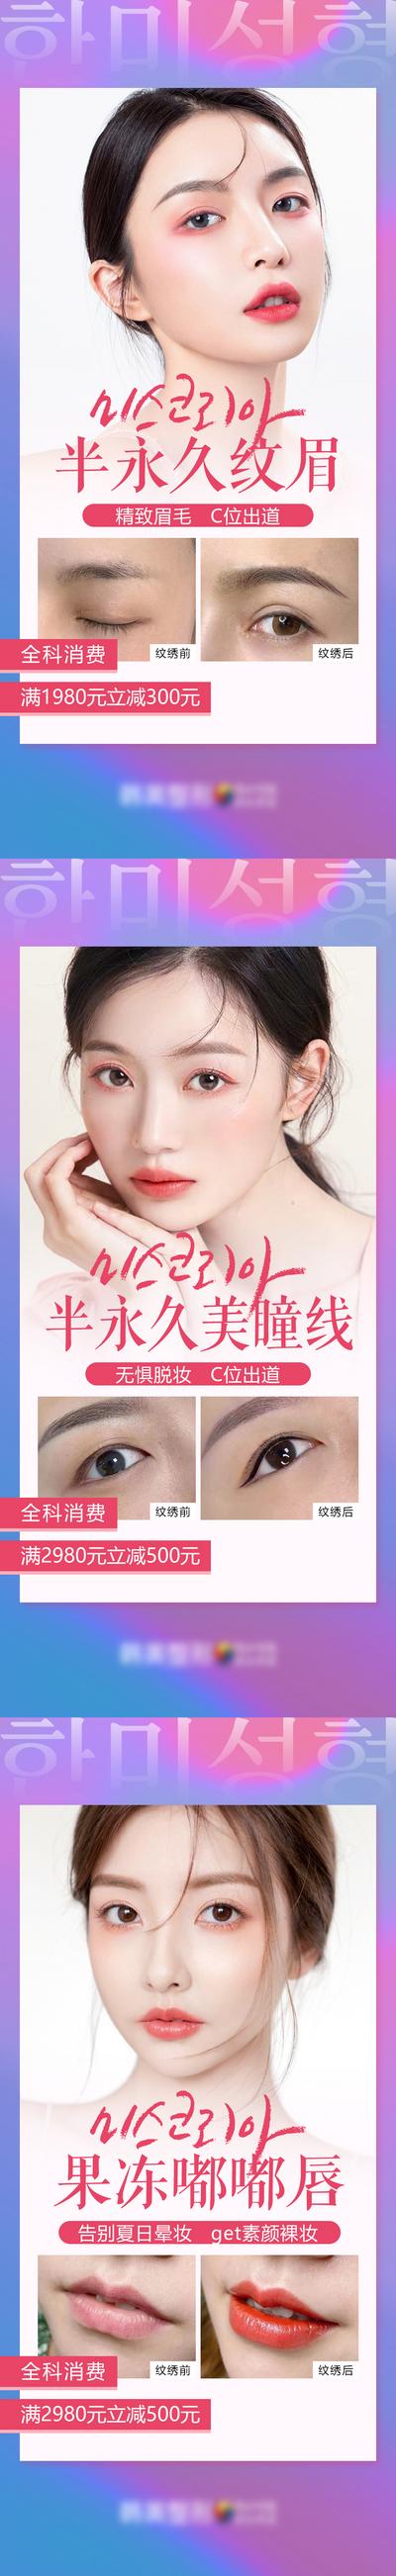 南门网 海报 医美 案例 人物 模特 对比 纹眉 美瞳线 韩式半永久 嘟嘟唇